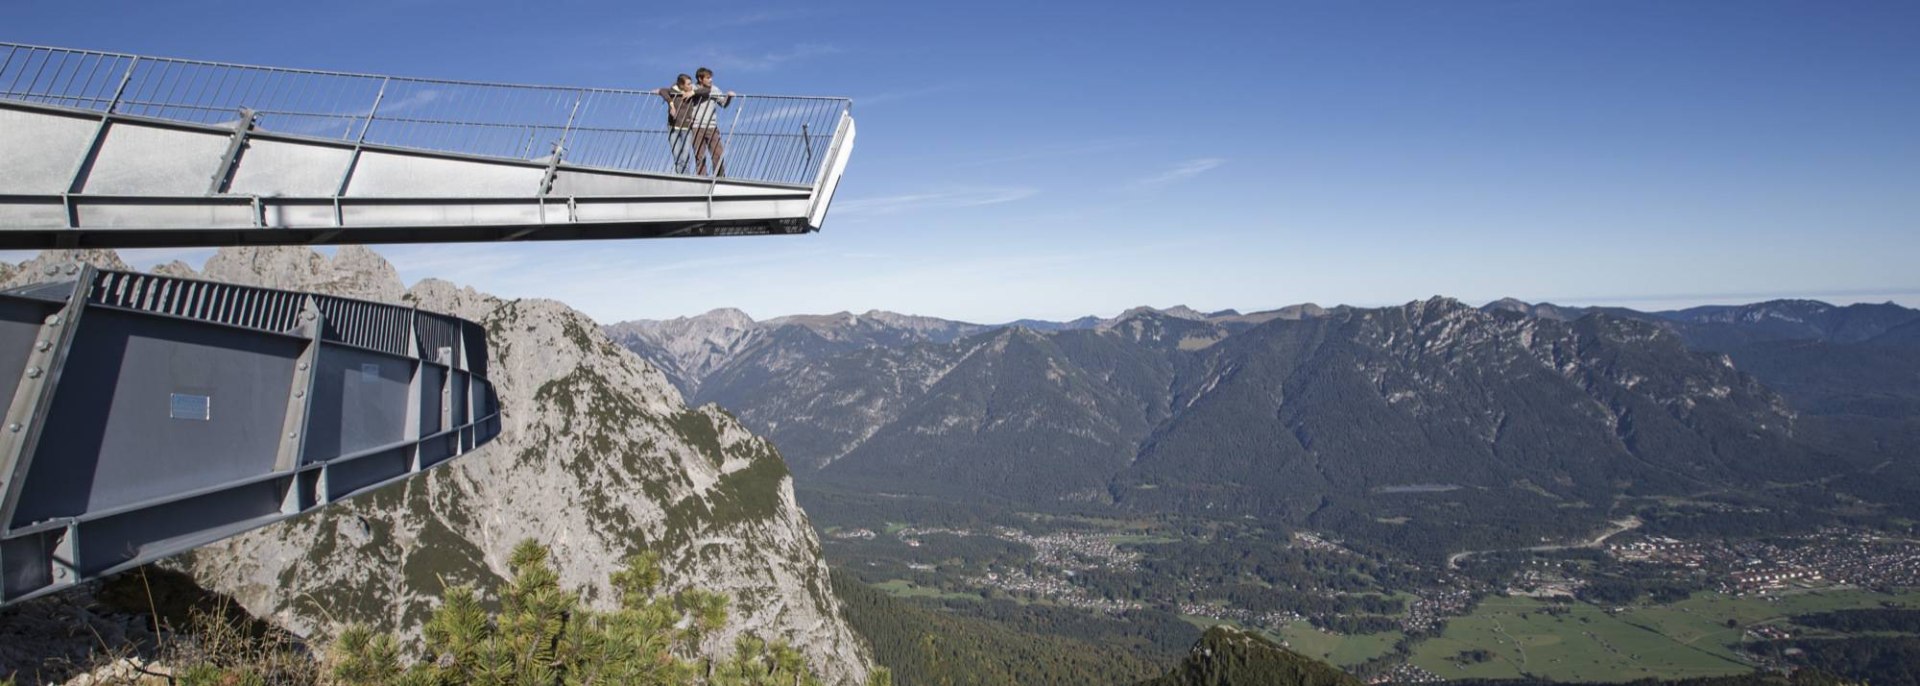 Die Aussichtsplattform Alpspixx am Osterfelderkopf in Garmisch-Partenkirchen , © Bayerische Zugspitzbahn Bergbahnen AG | Matthias Fend 